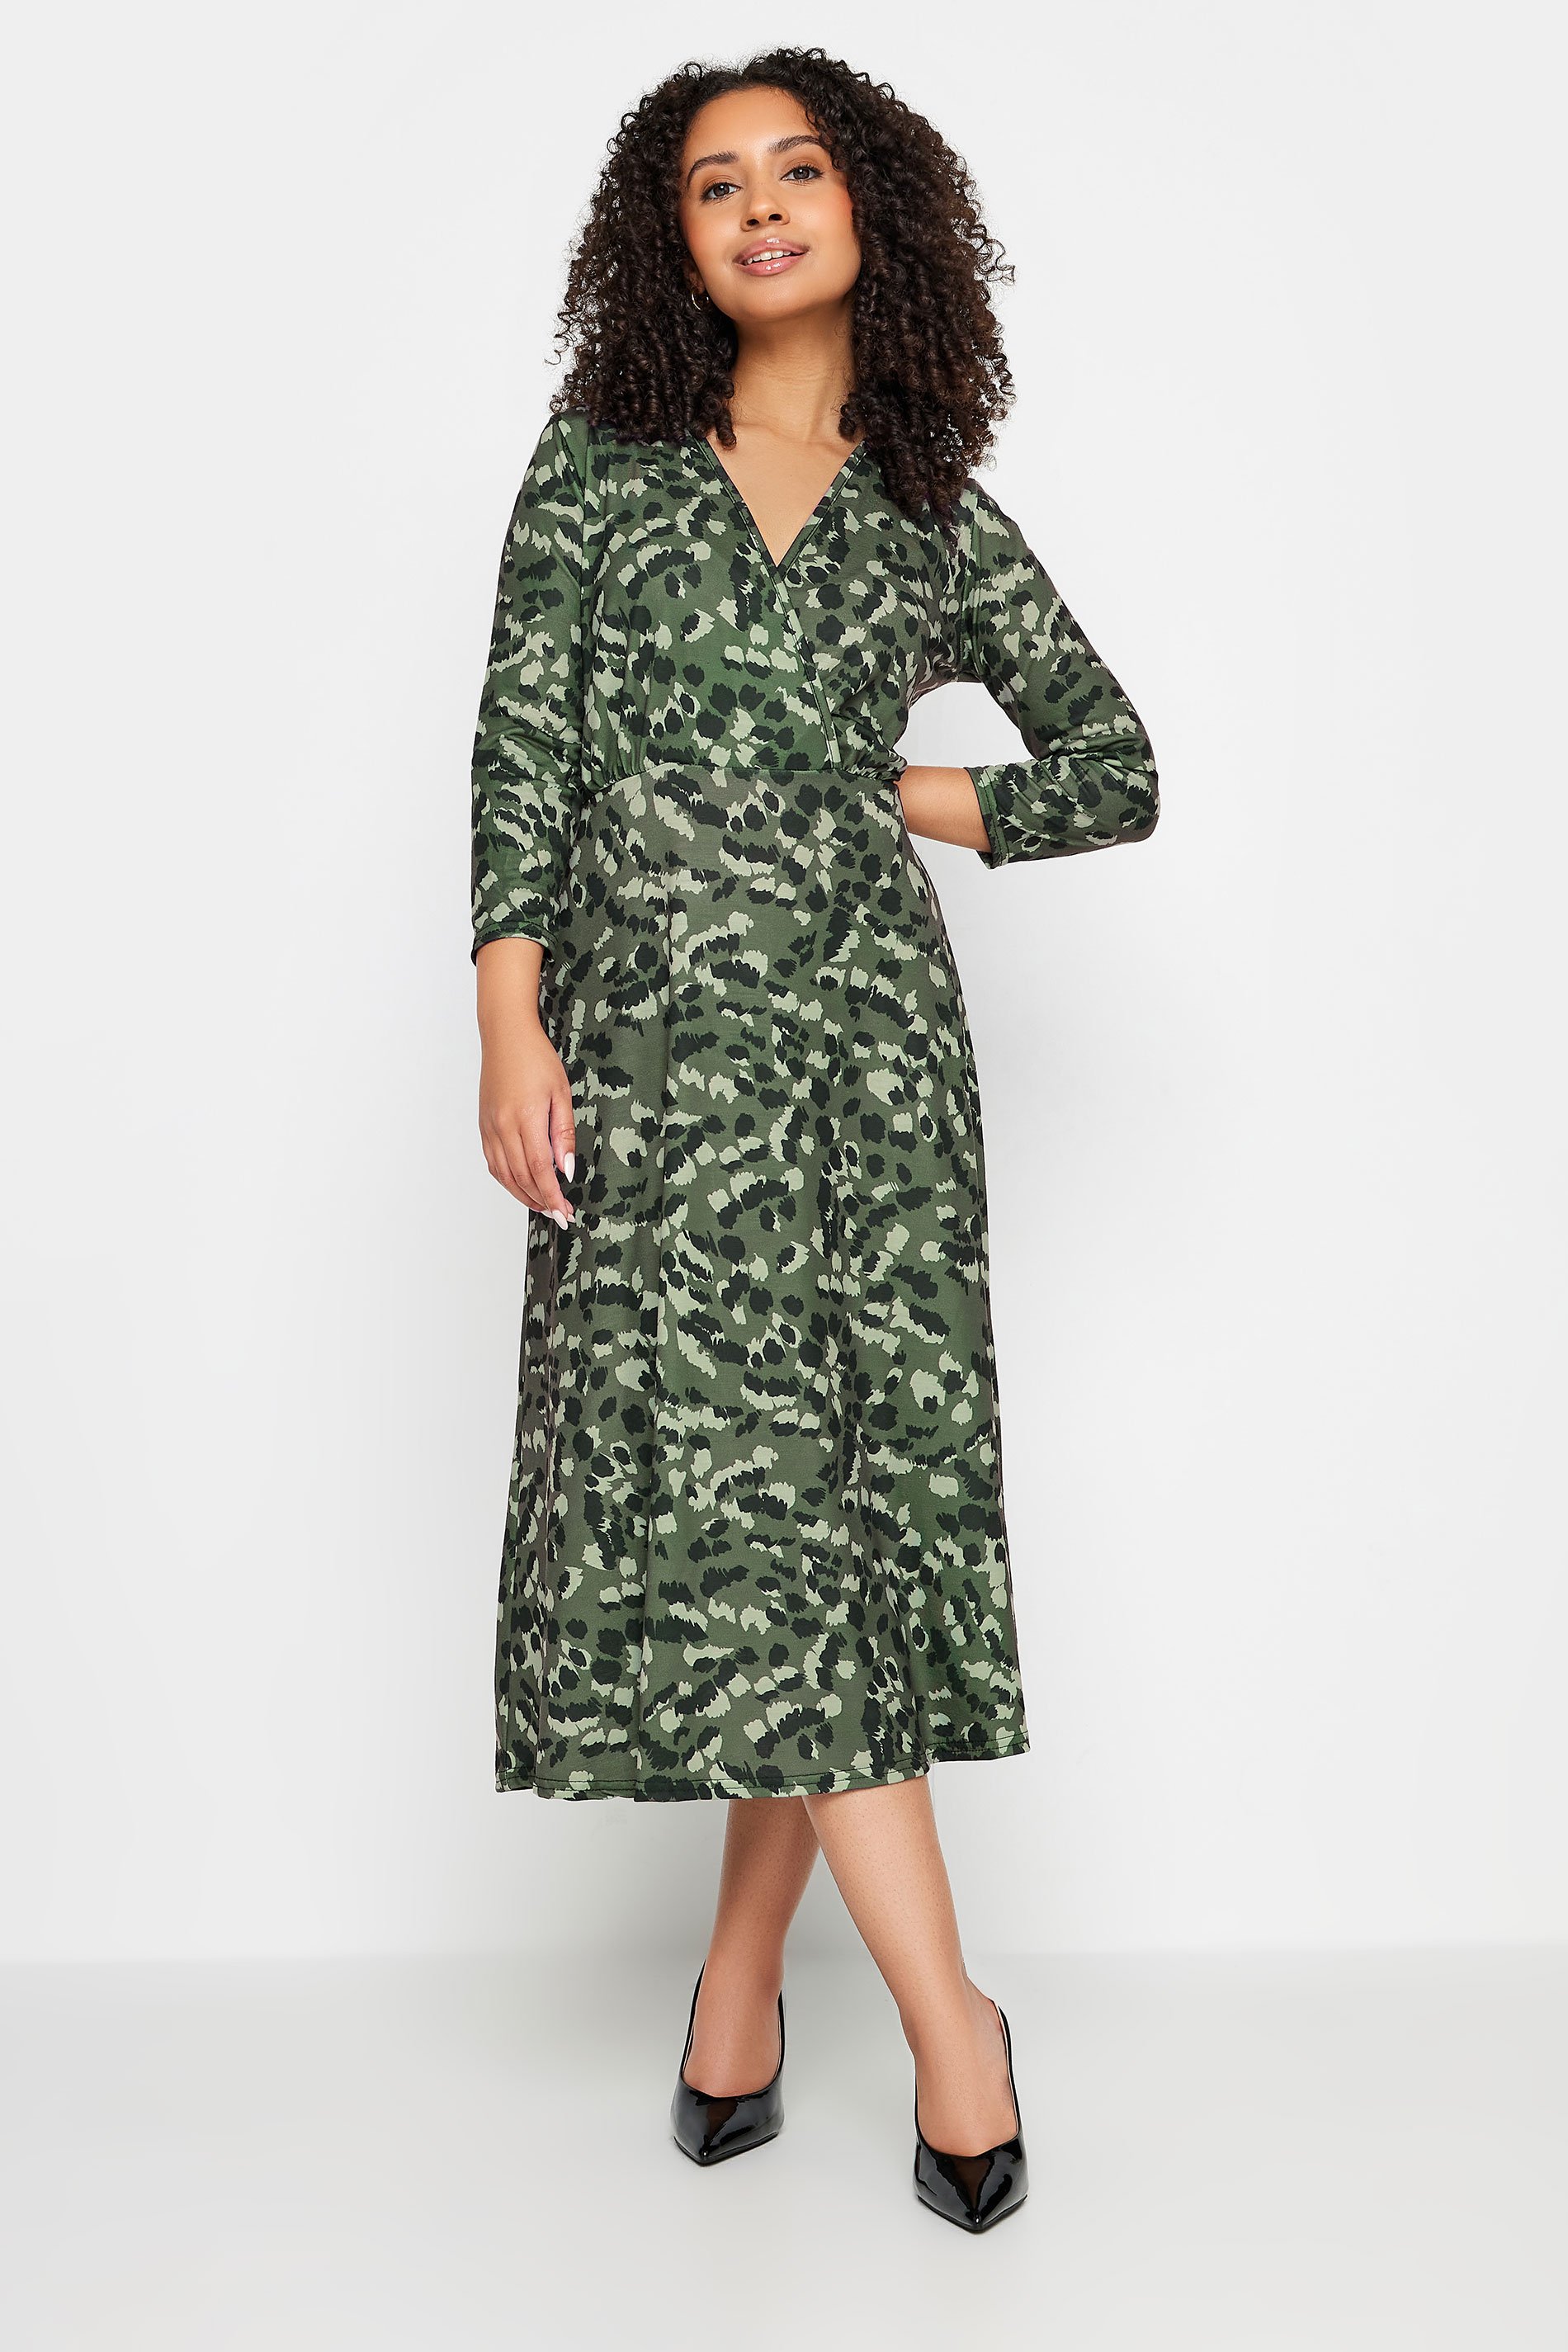 M&Co Petite Green Animal Print Wrap Dress | M&Co  1